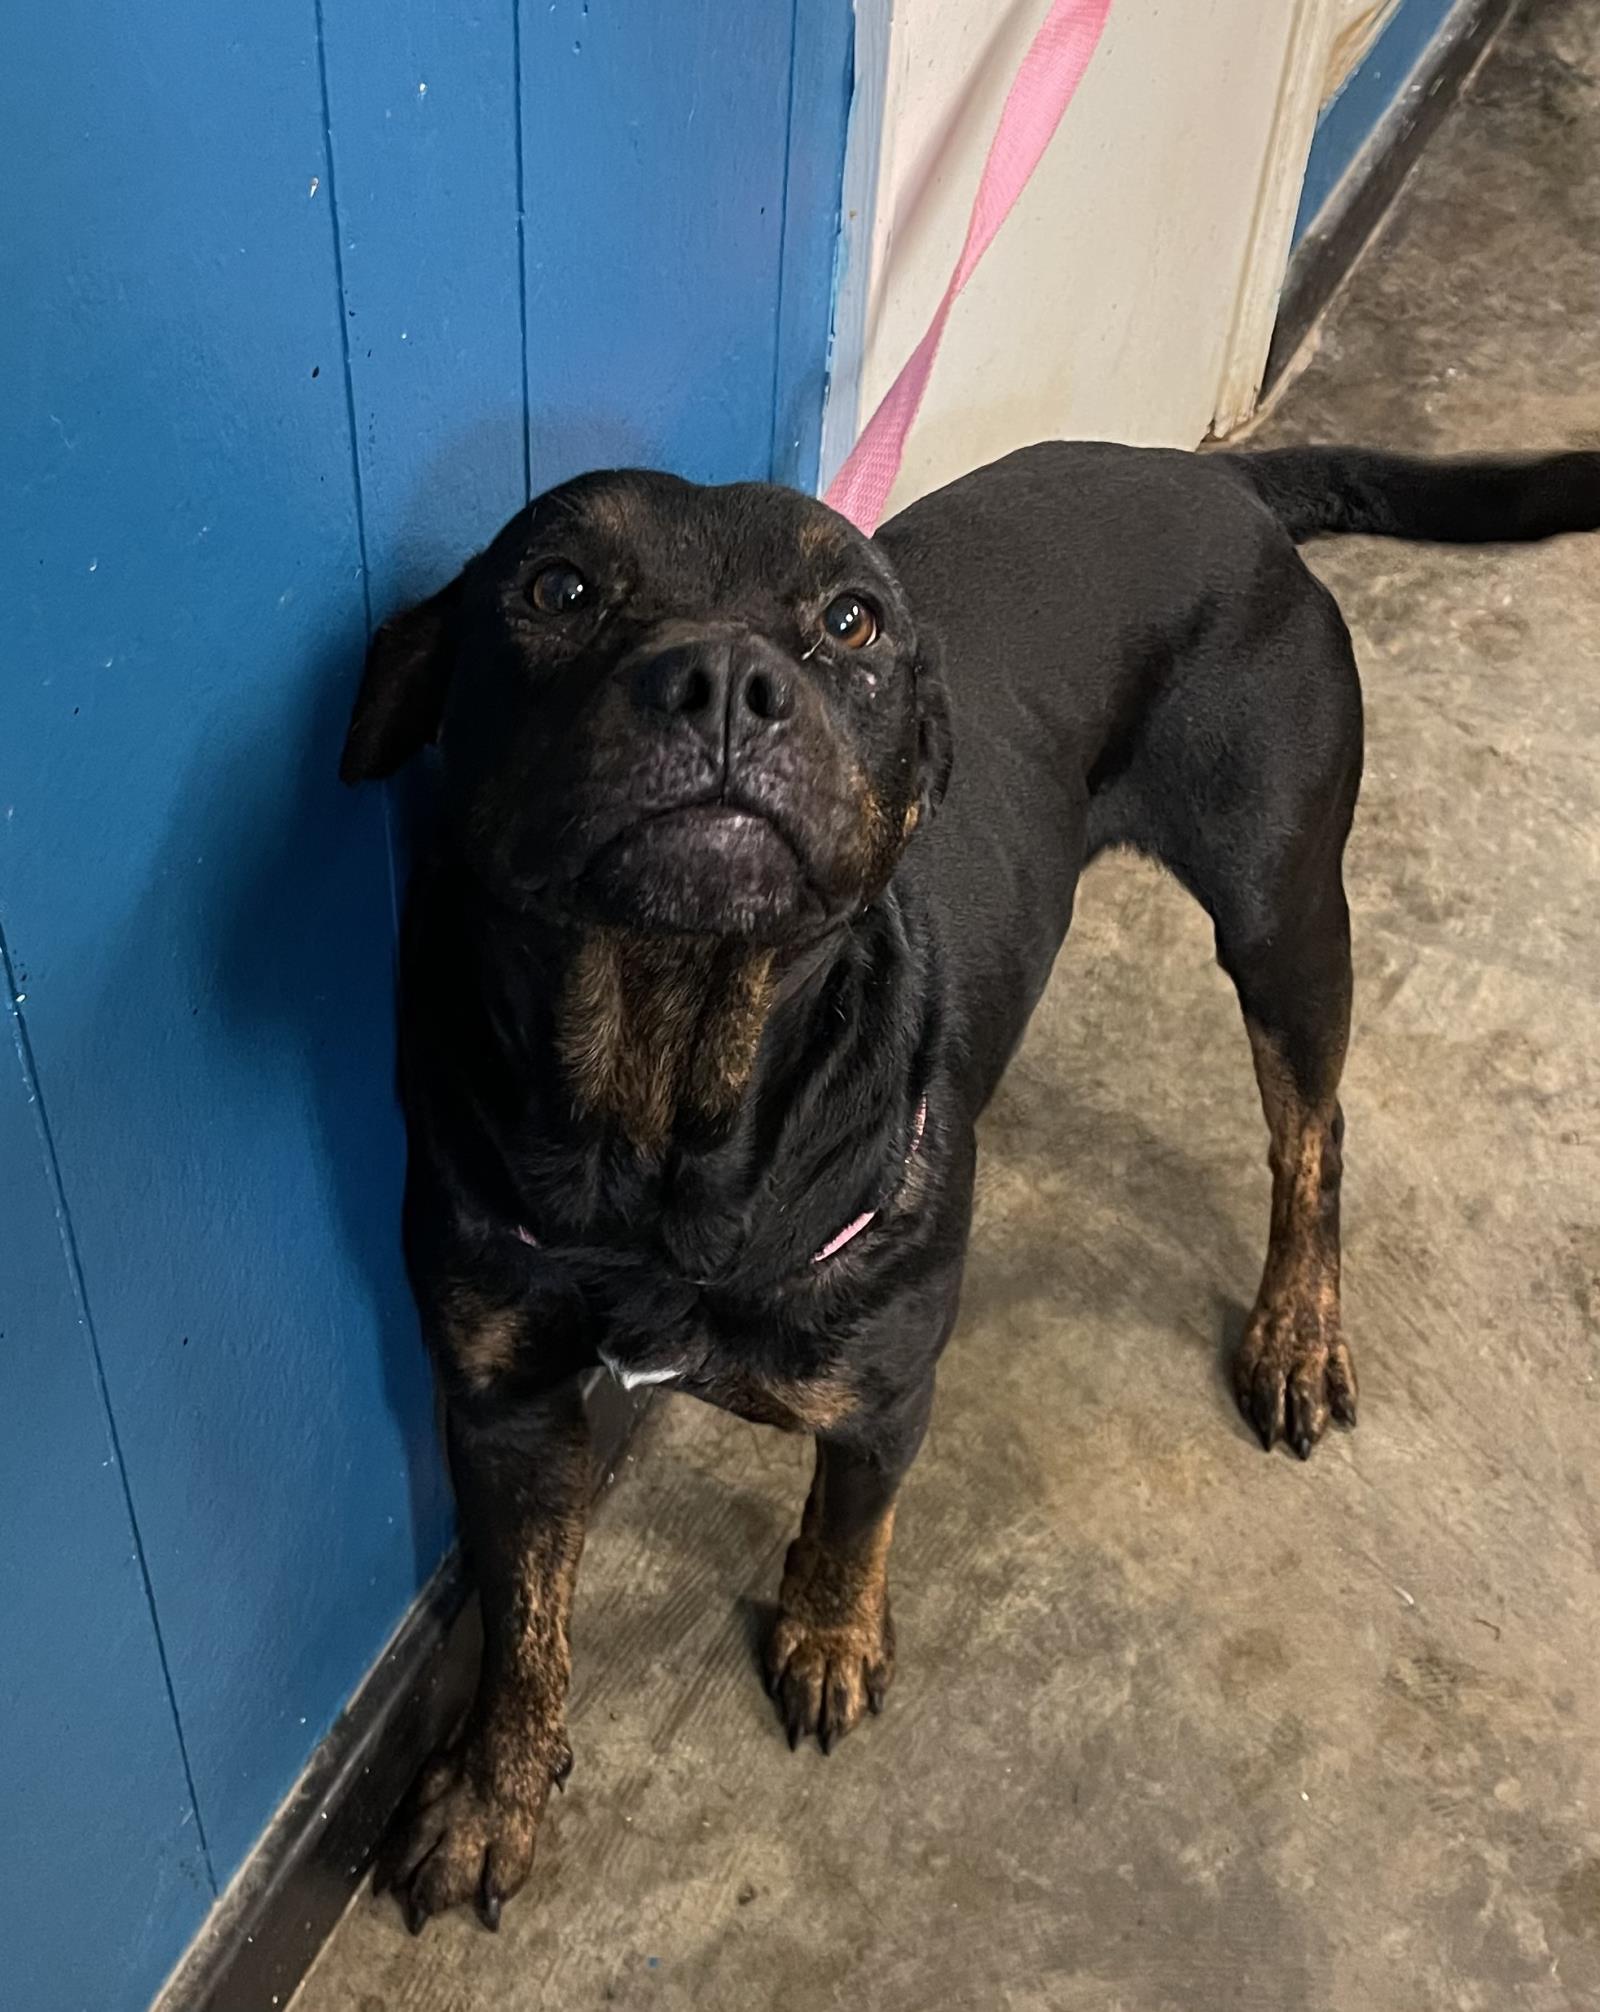 Dog for adoption - Abu, a Rottweiler Mix in Ozark, AL | Petfinder